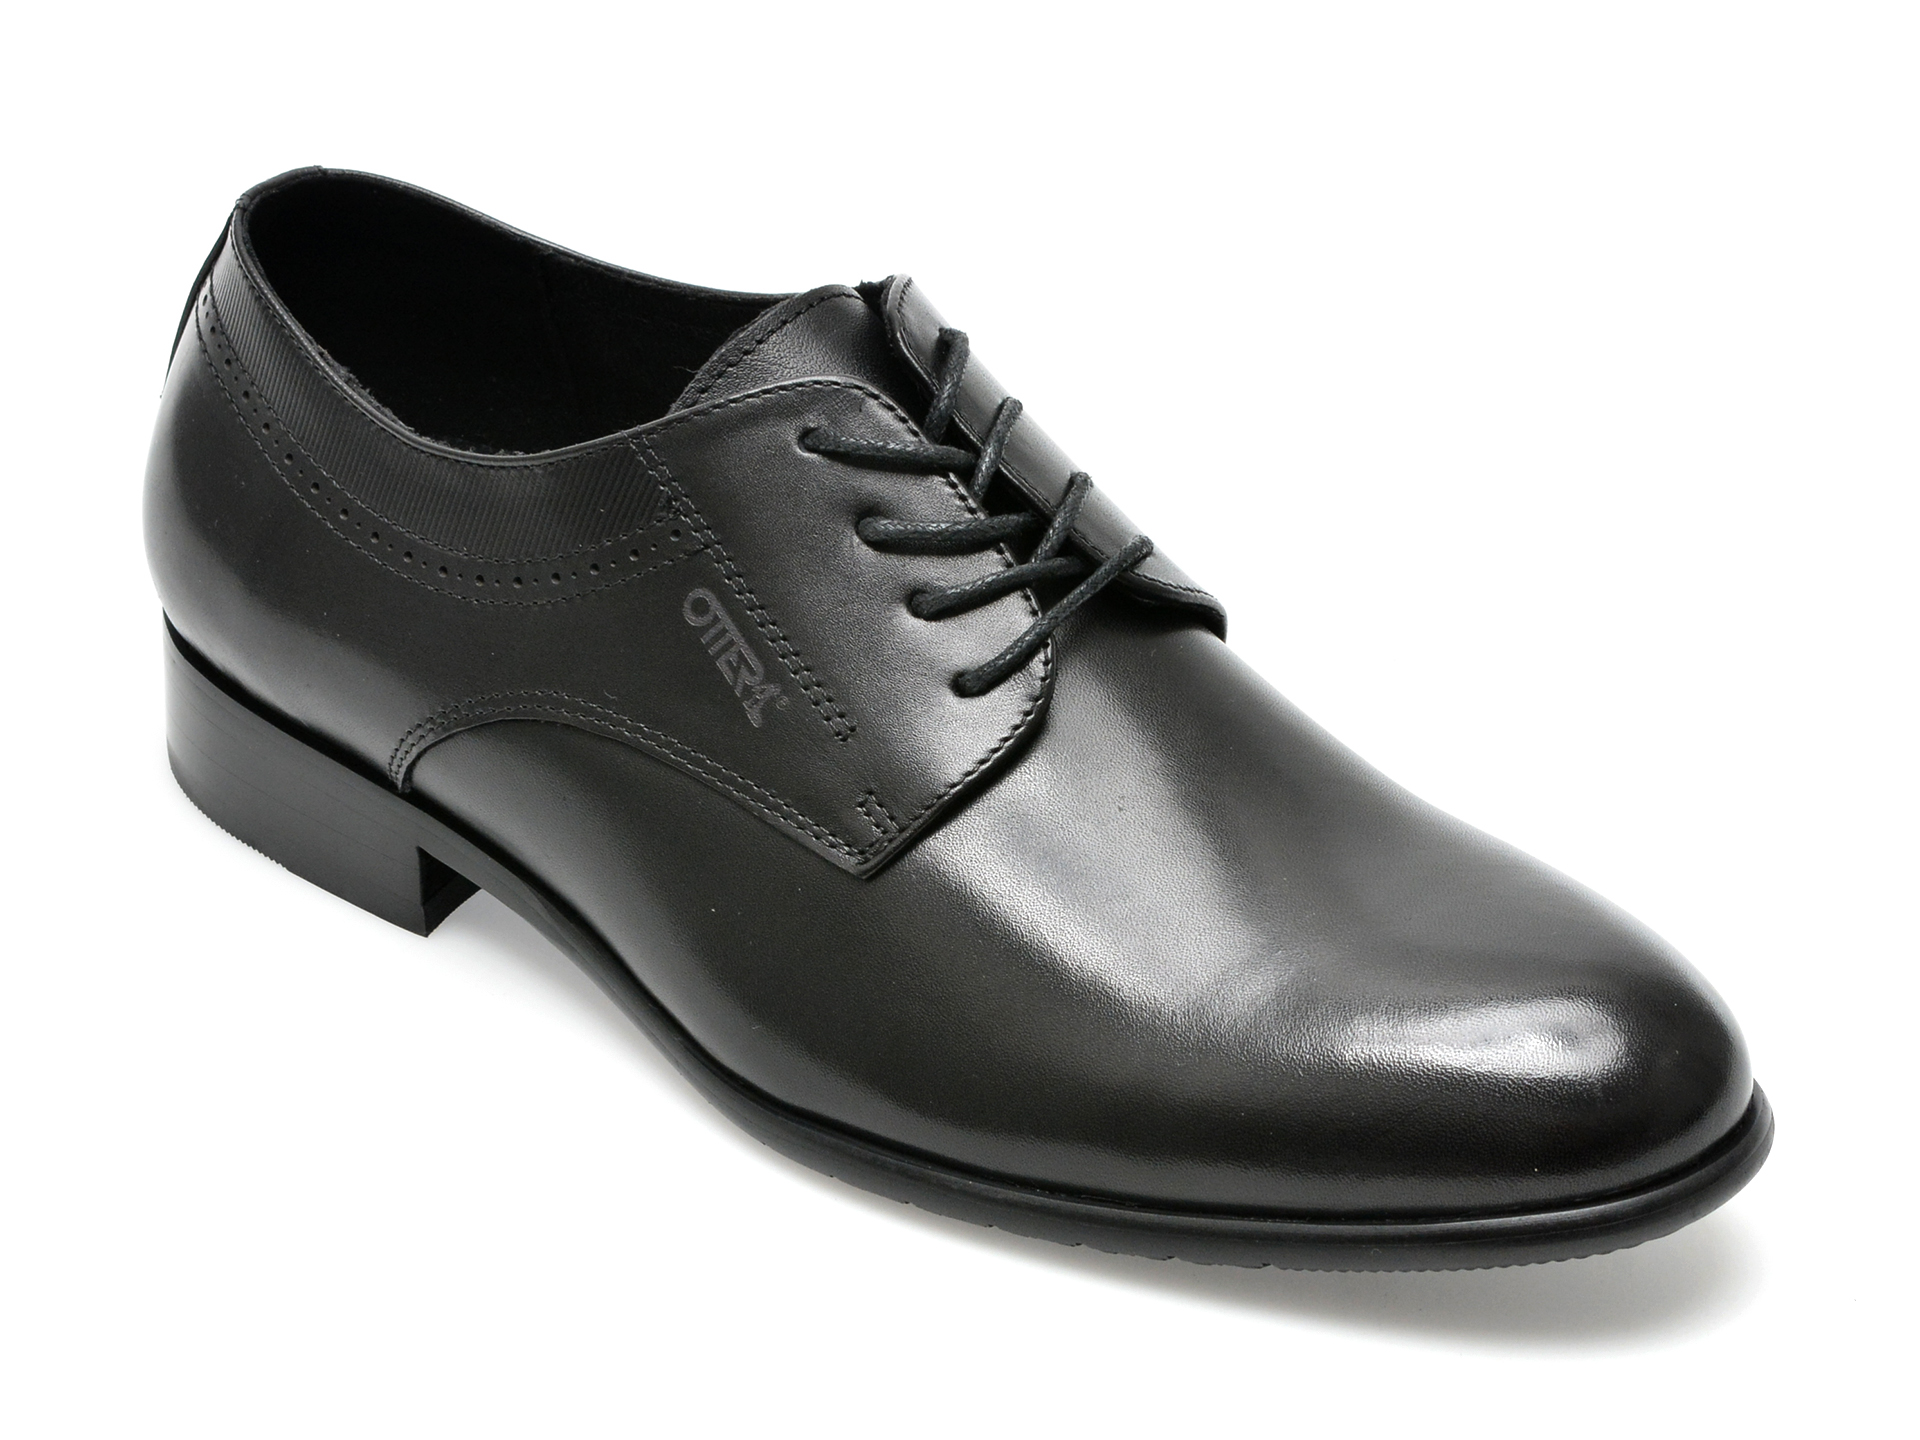 Pantofi OTTER negri, L120001, din piele naturala barbati 2023-03-21